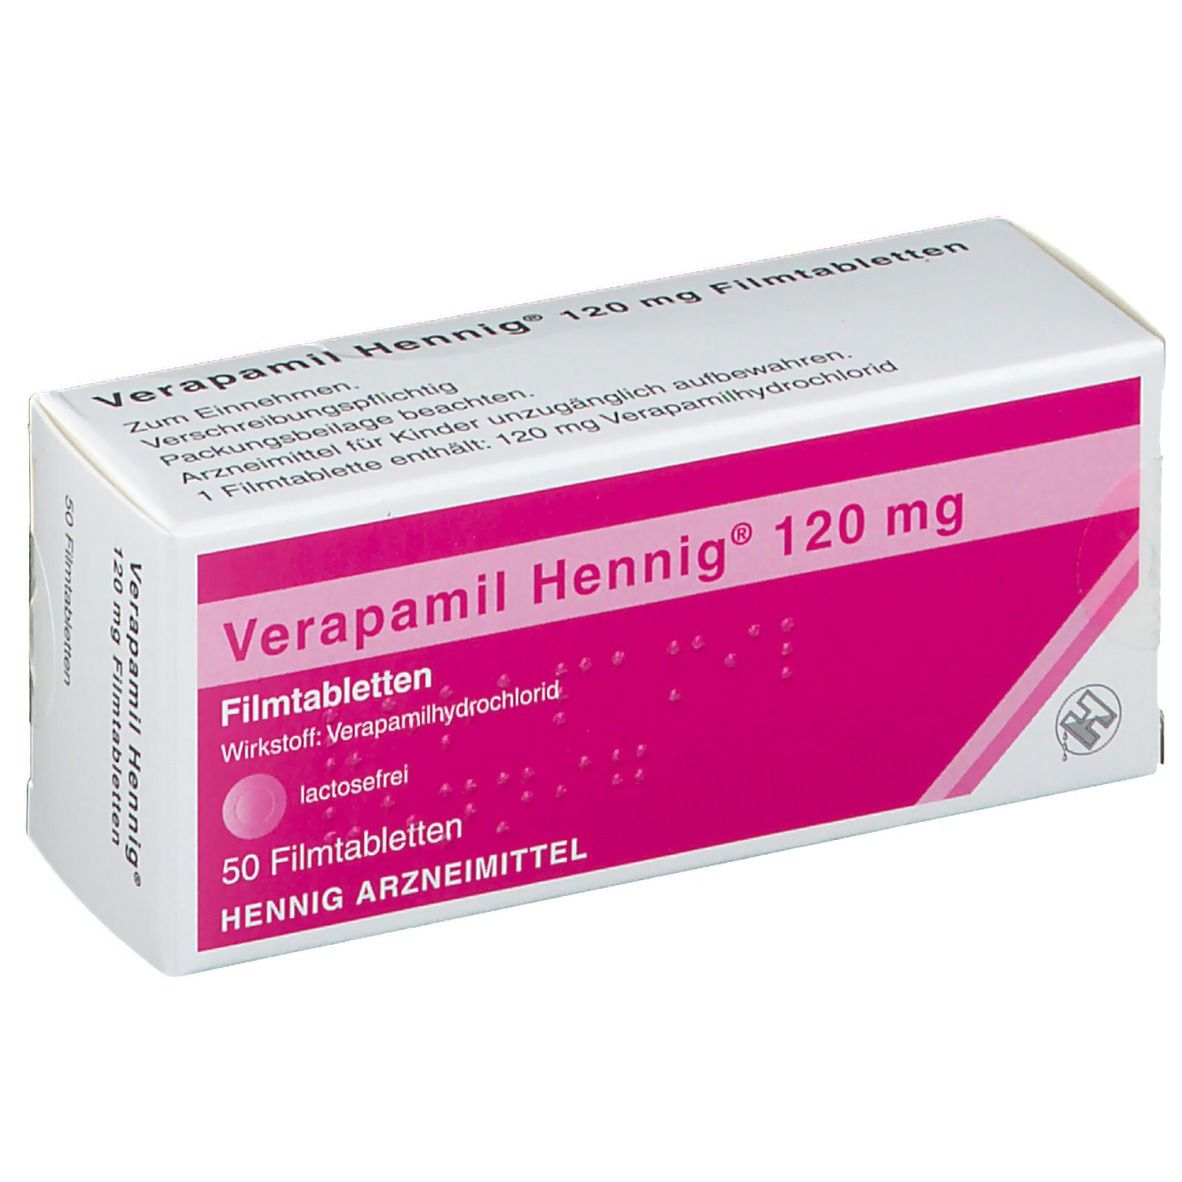 Verapamil Hennig® 120 mg